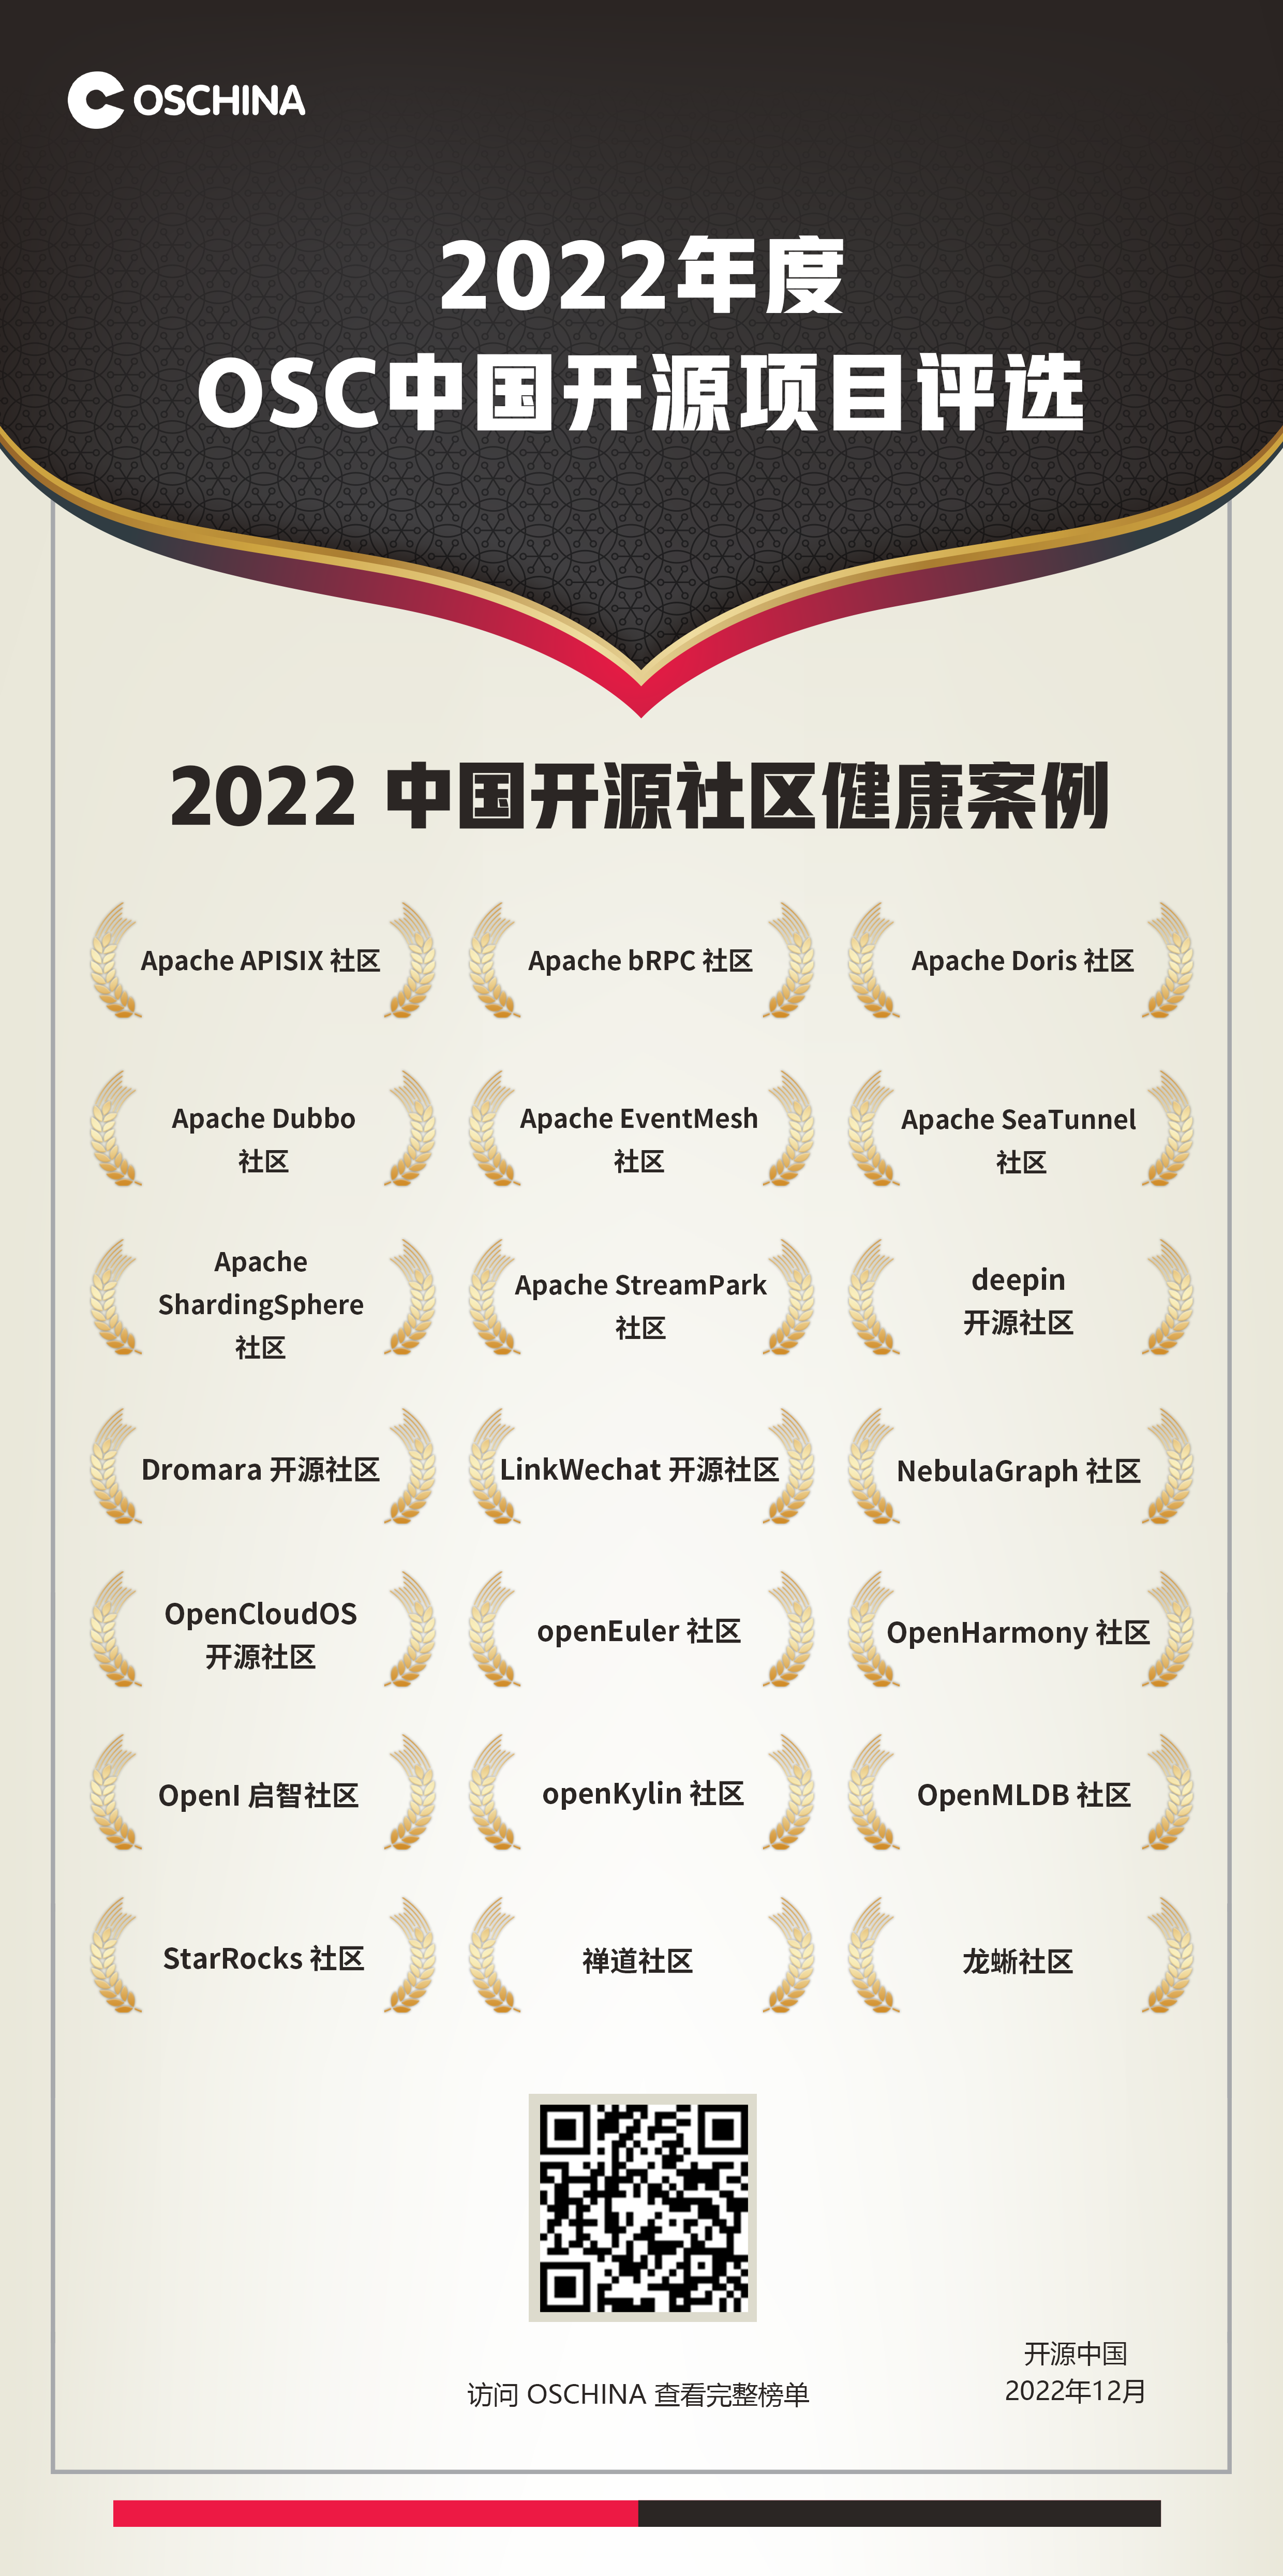 2022 年度 OSC 中国开源项目评选：「中国开源社区健康案例」公布
                                    顶